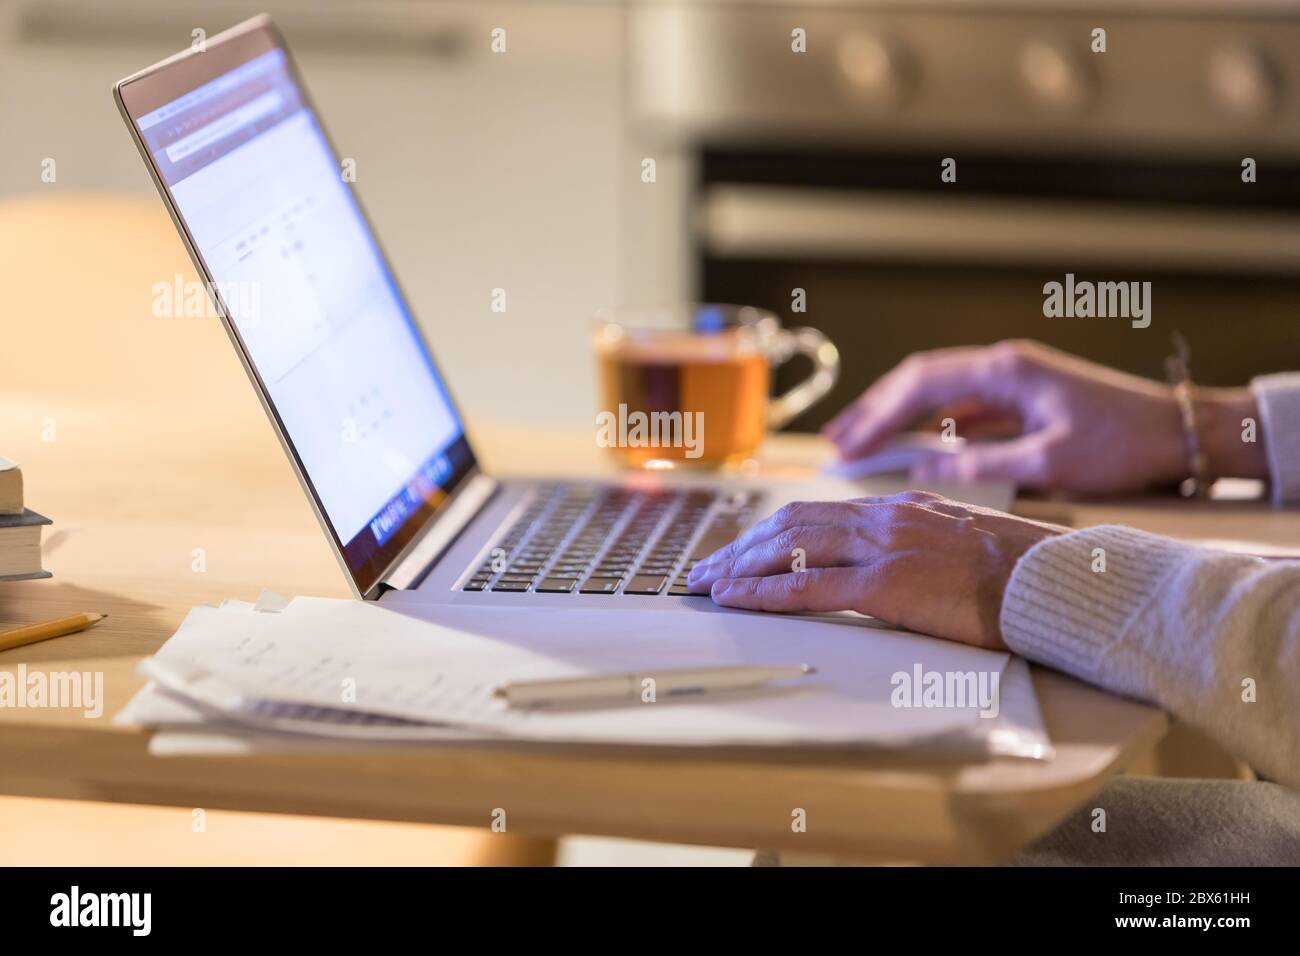 Gros plan de l'homme travaillant à la maison en utilisant un ordinateur portable, , en utilisant la souris d'ordinateur, tasse de thé floue sur l'arrière-plan. Indépendant, travail à distance, indépendant Banque D'Images